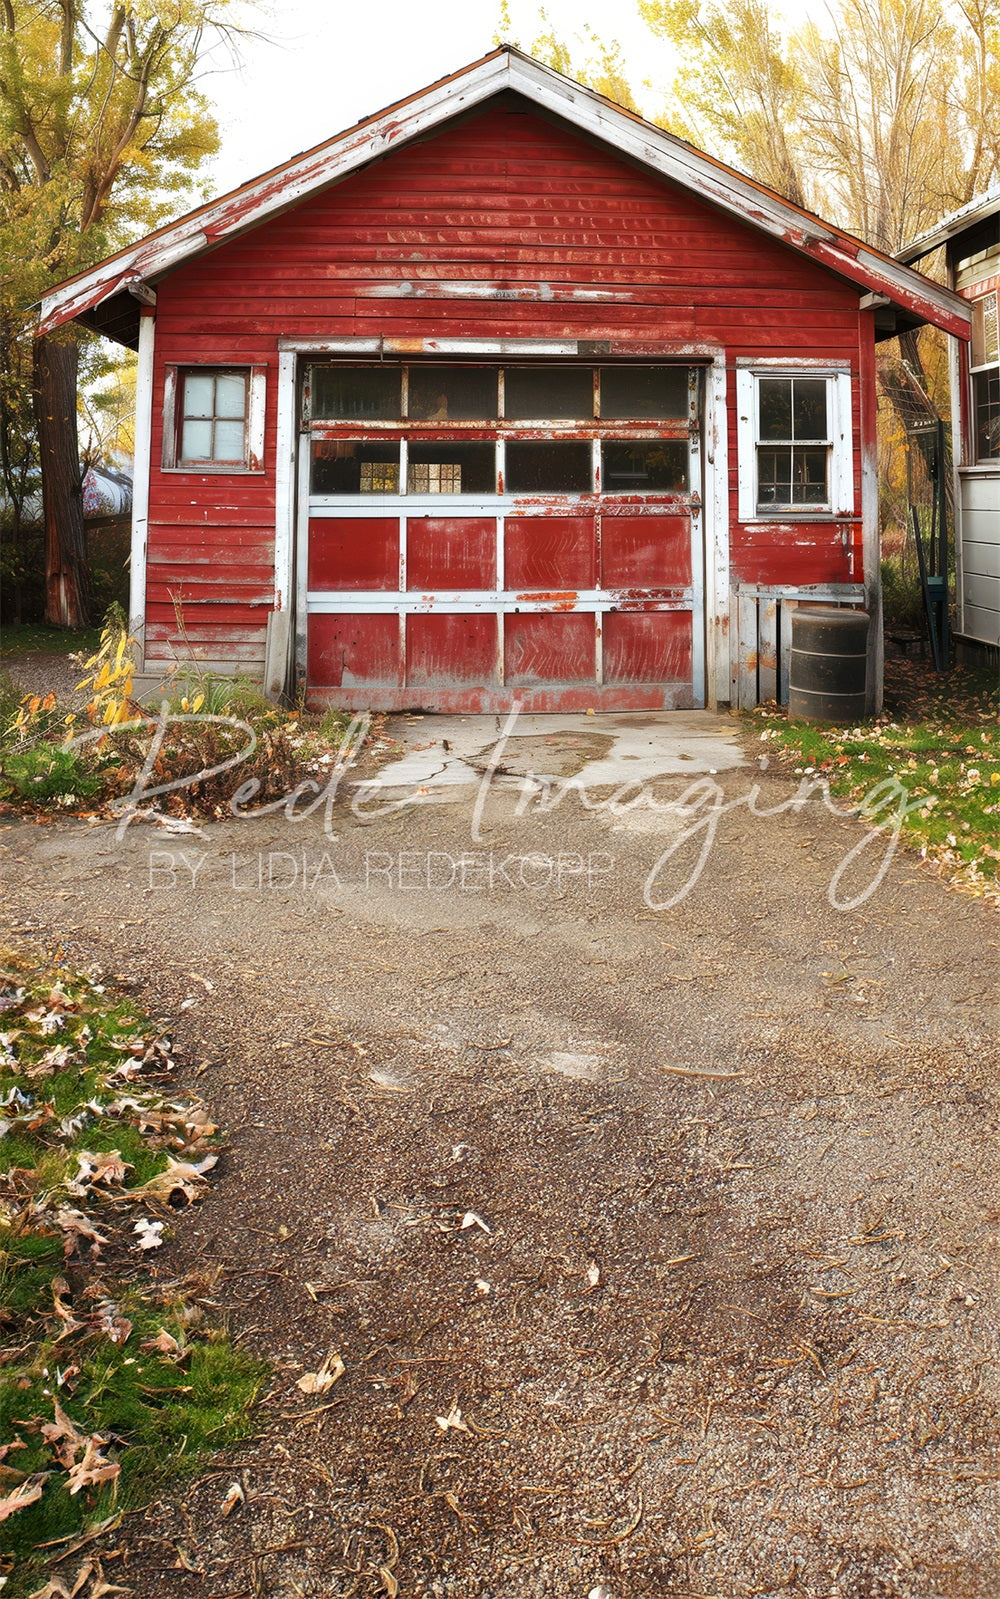 Scena autunnale all'aperto nella vecchia foresta con garage rosso di Lidia Redekopp